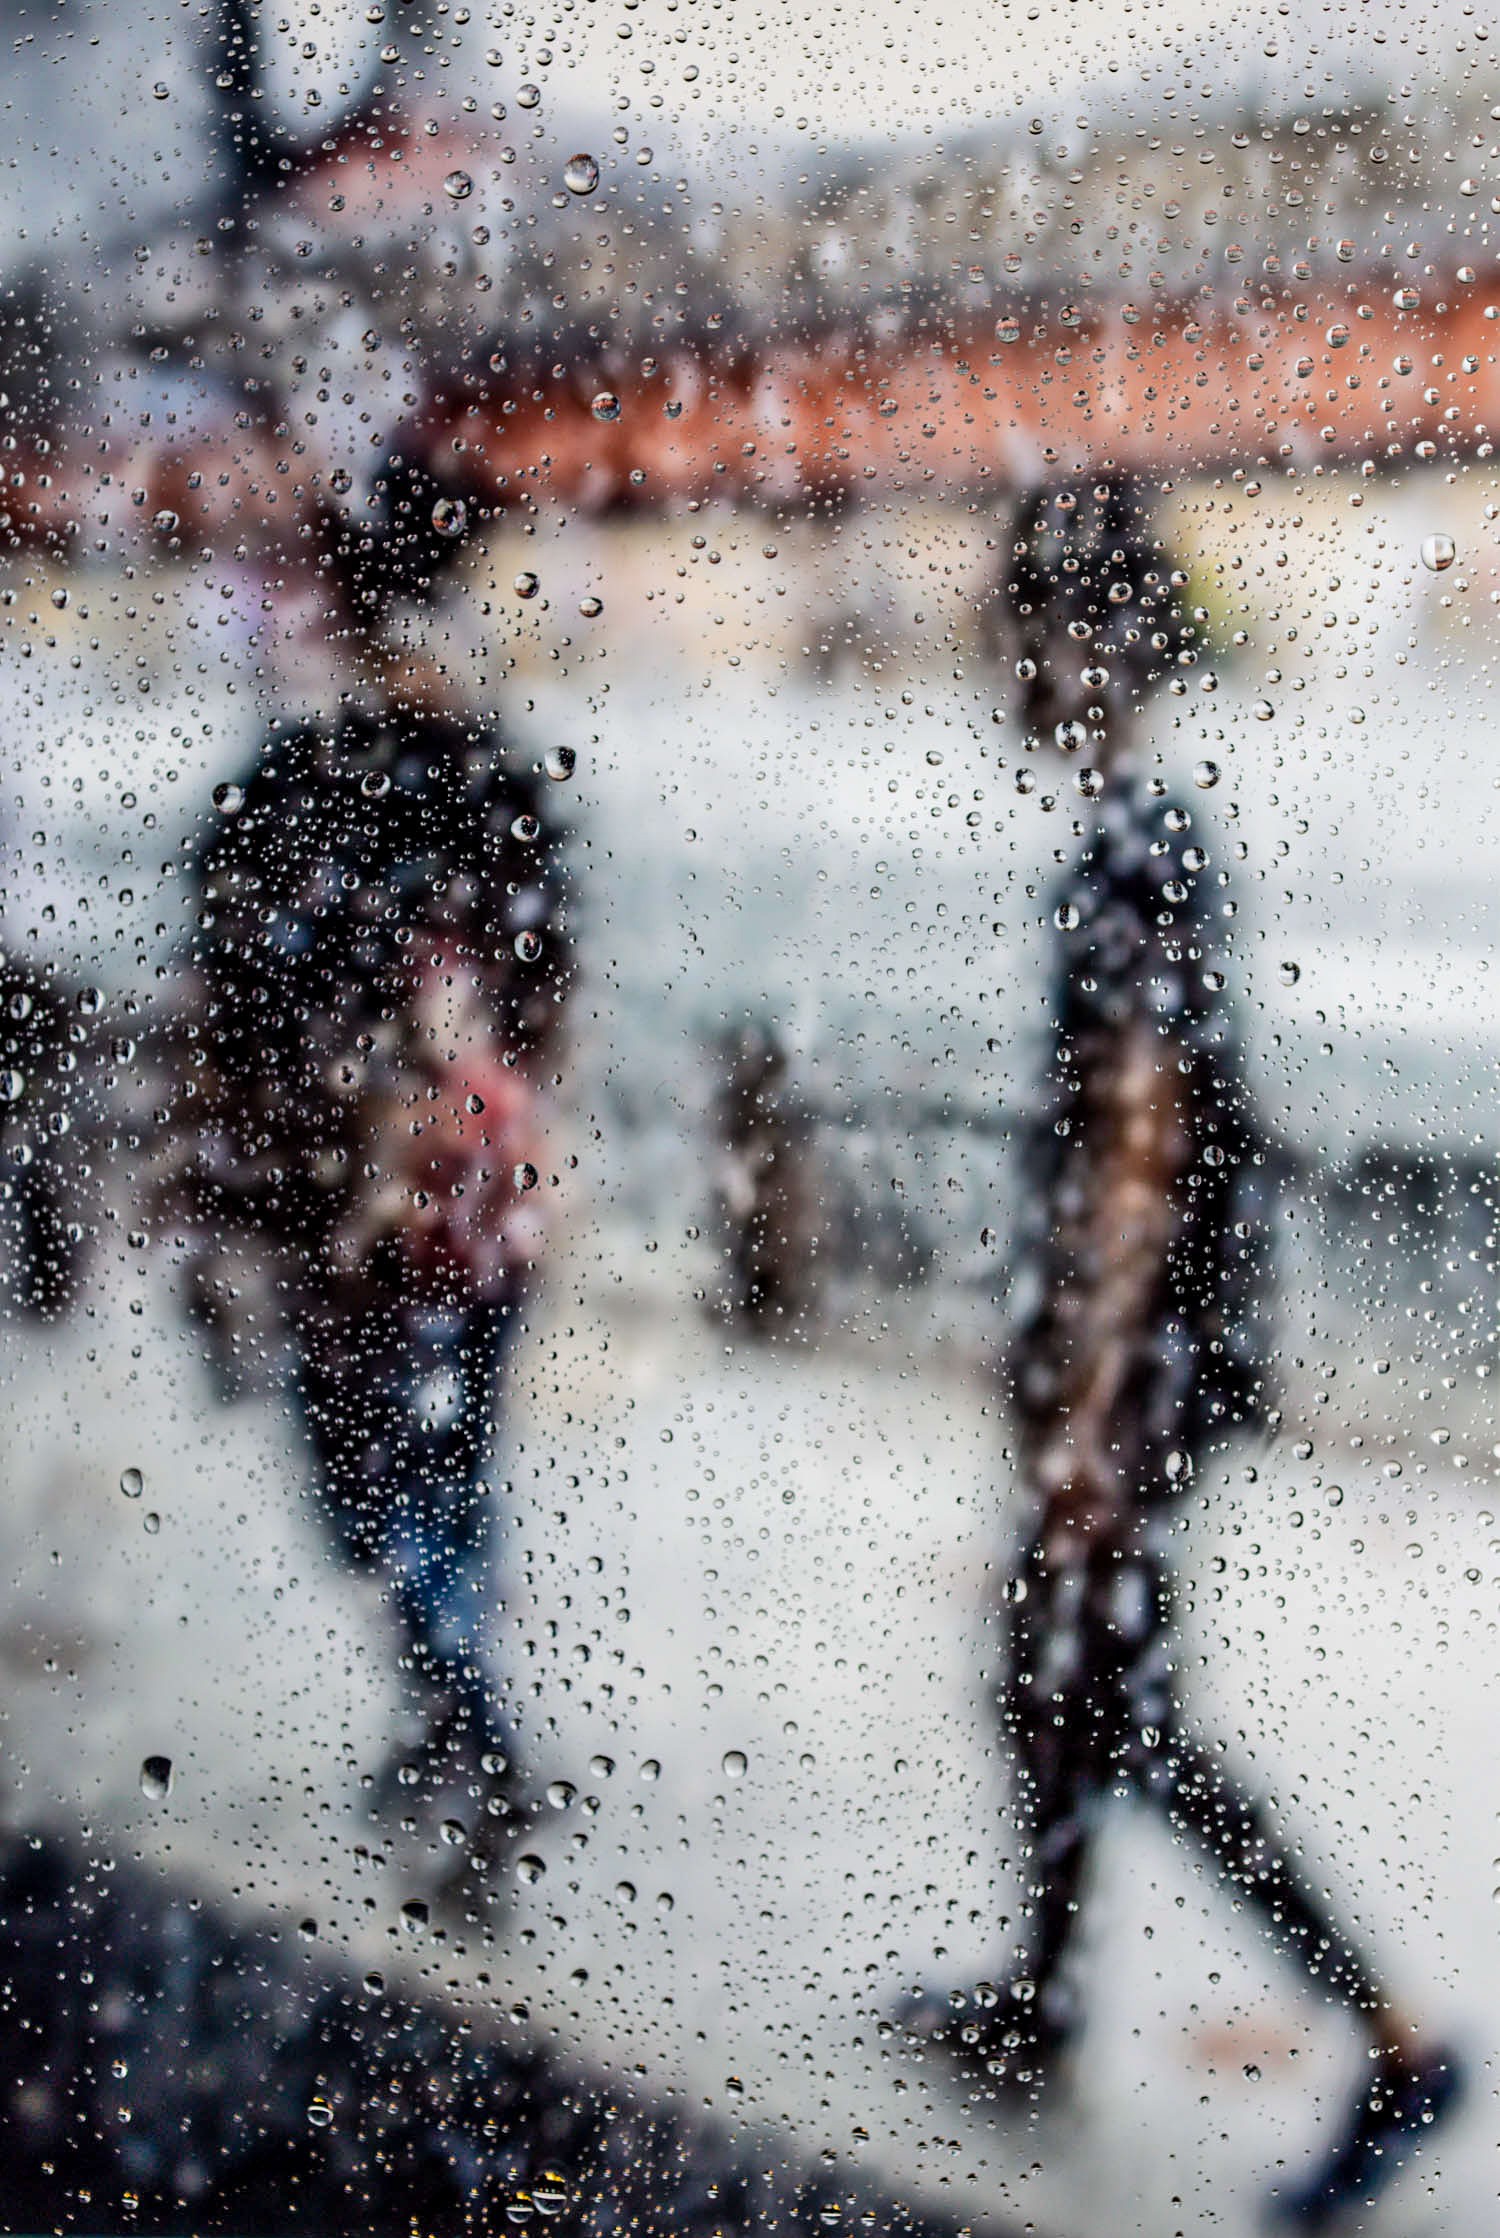 ▷ Rainy days in Tokyo V by Sven Pfrommer, 2021